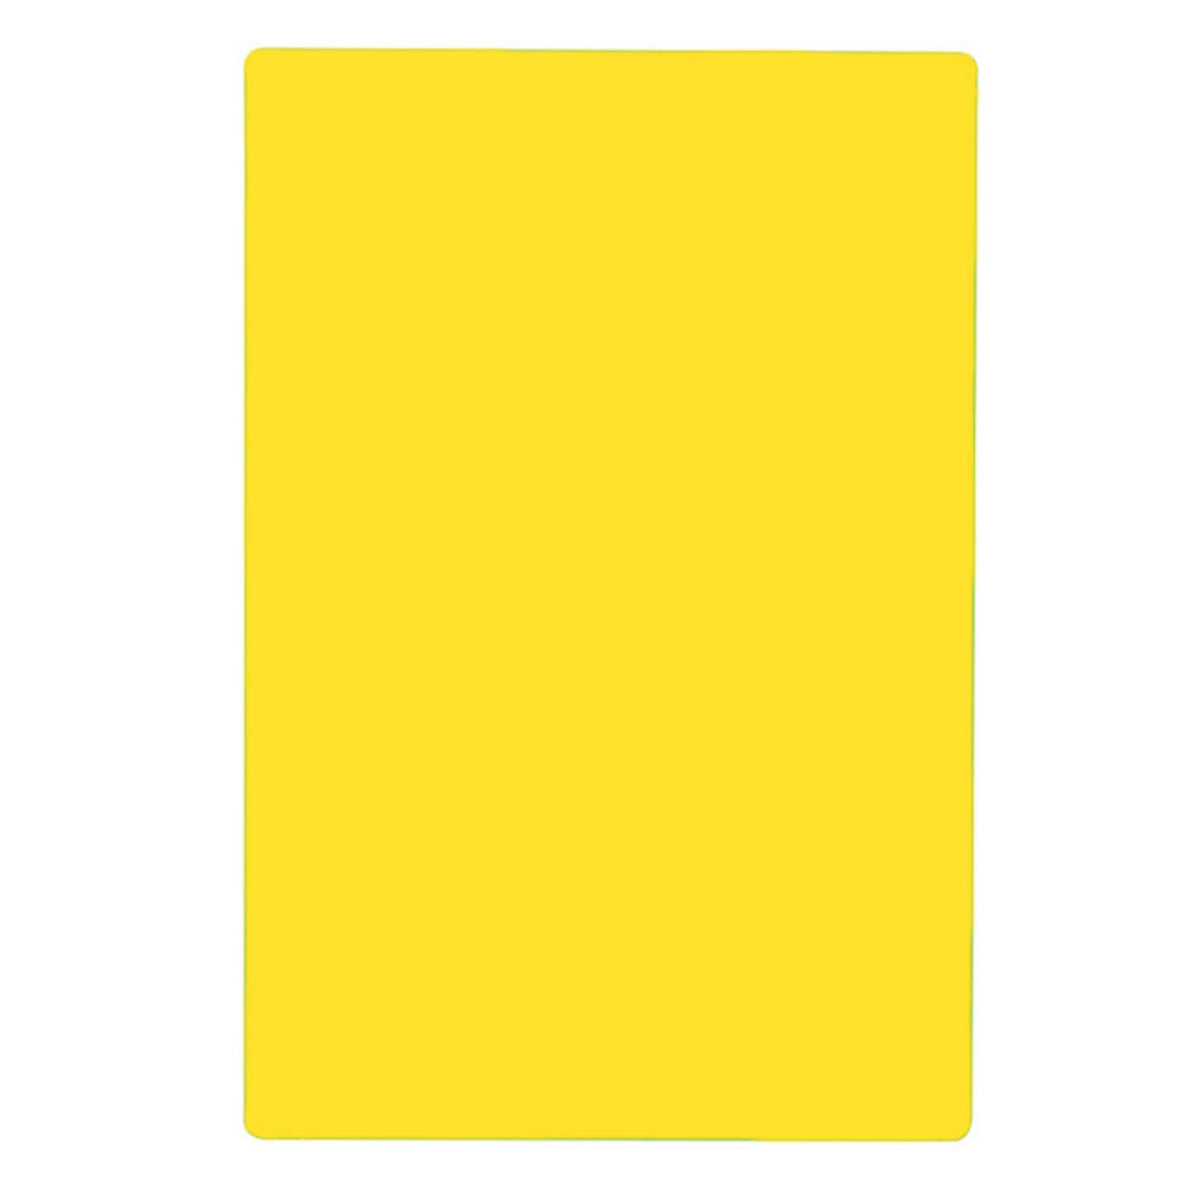 Tabla para Picar de Plástico Amarillo de 46 x 61 cm NFS